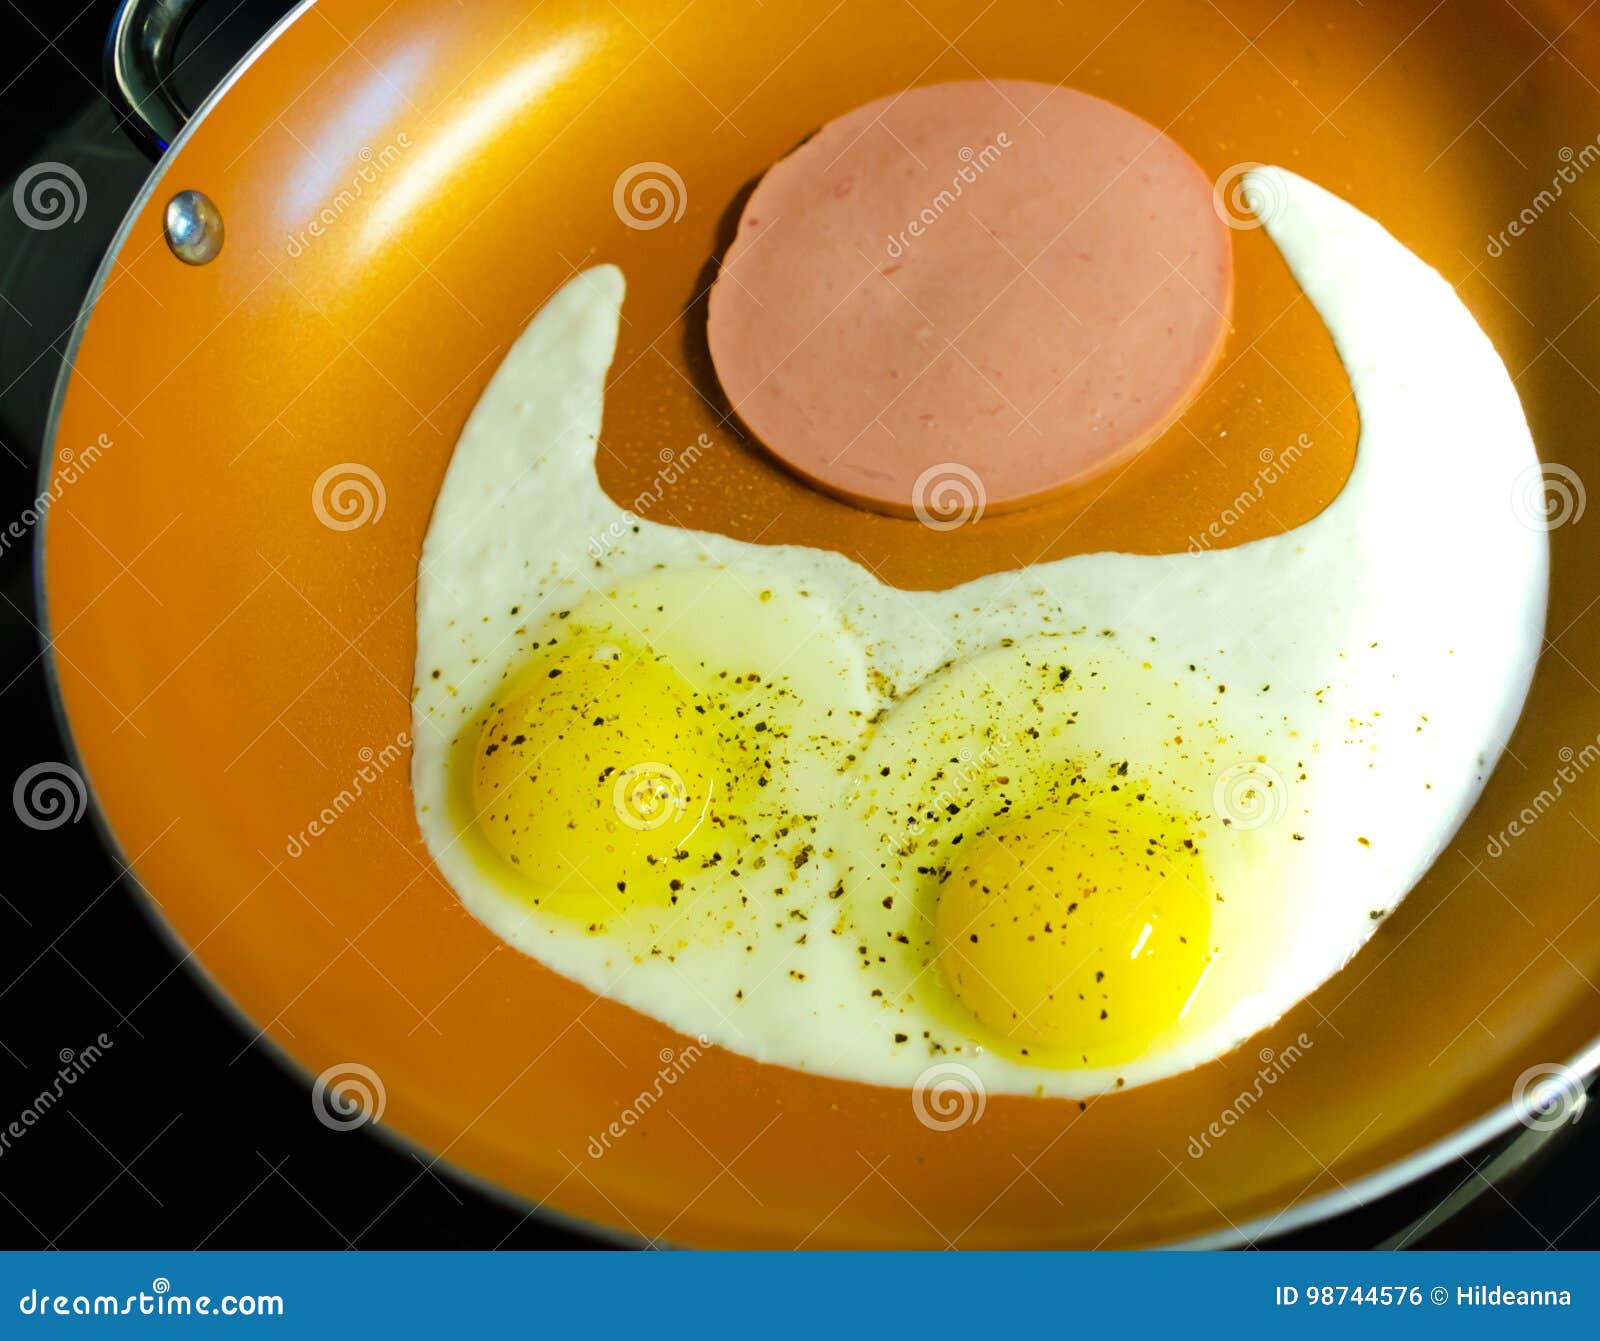 Яичница из 2 яиц калорийность на масле. 100 Грамм яичницы. Яичница глазунья вес. Калории в глазуньи из двух яиц. Яичница калории.